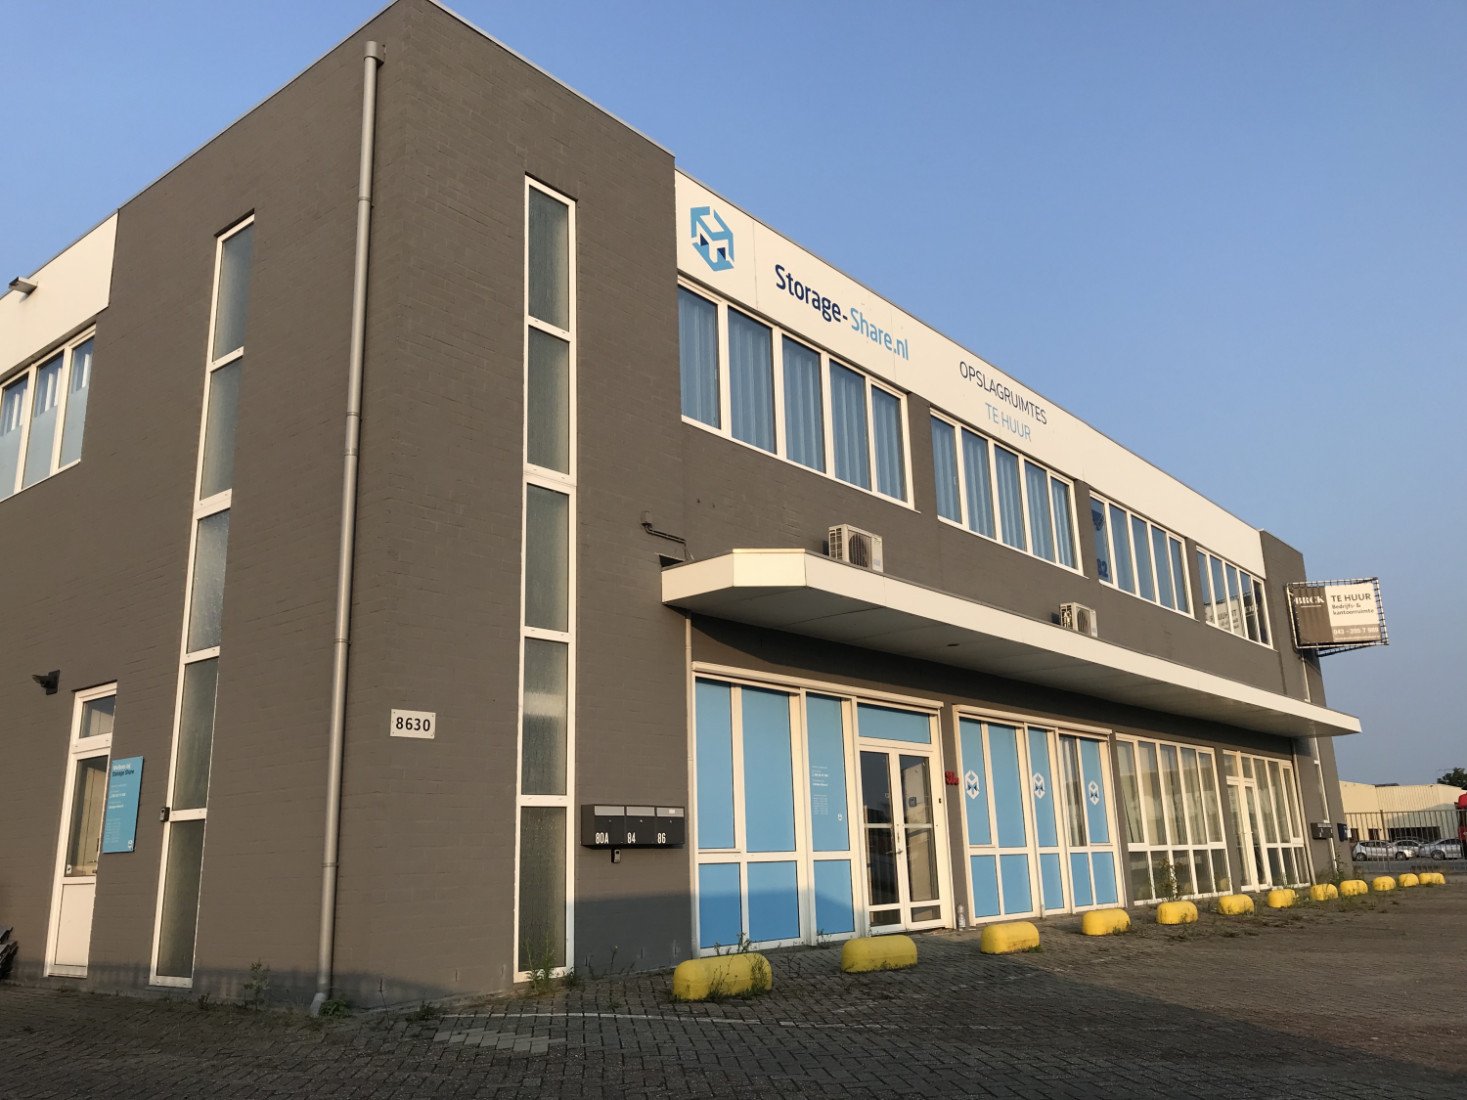 Betaalbare extra vierkante meters bij Storage Share in Hoensbroek-Heerlen - Nieuws.nl